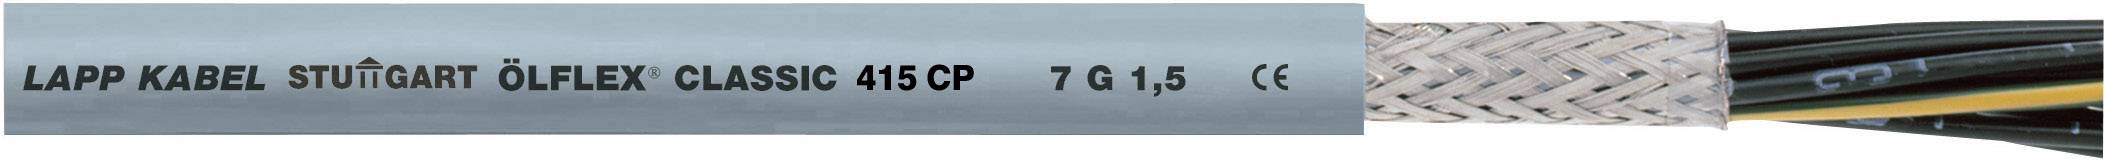 LAPP ÖLFLEX 415 CP Steuerleitung 3 G 0.75 mm² Grau 1314018-100 100 m